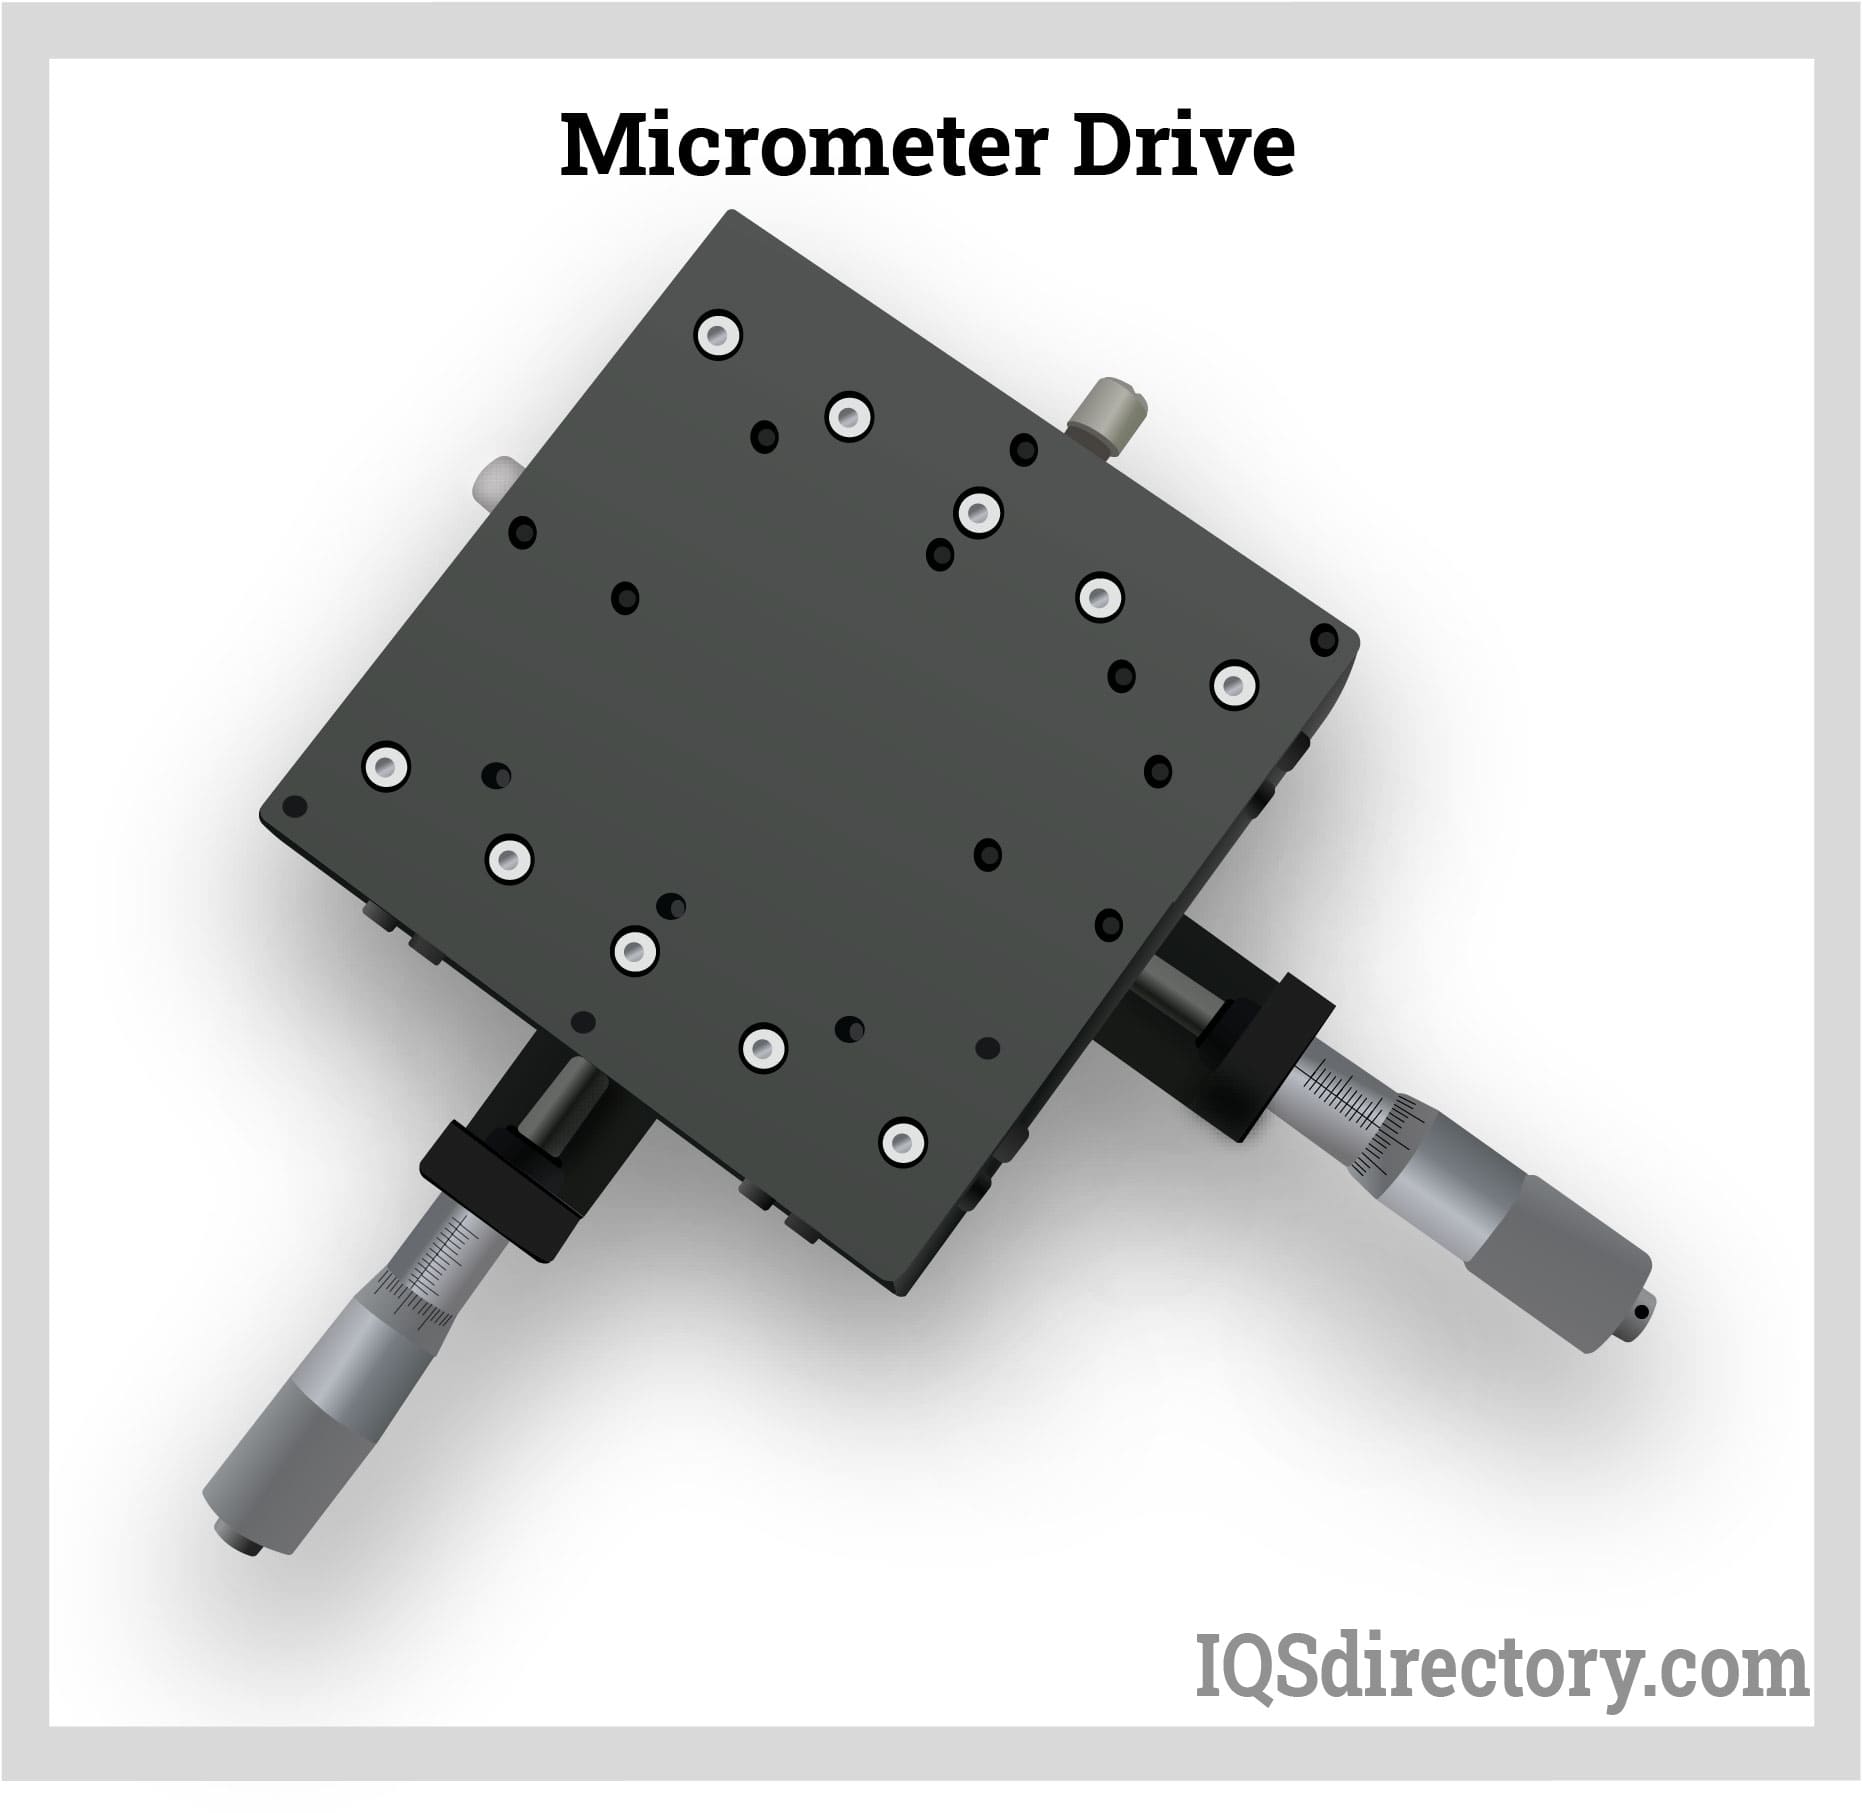 Micrometer Drive